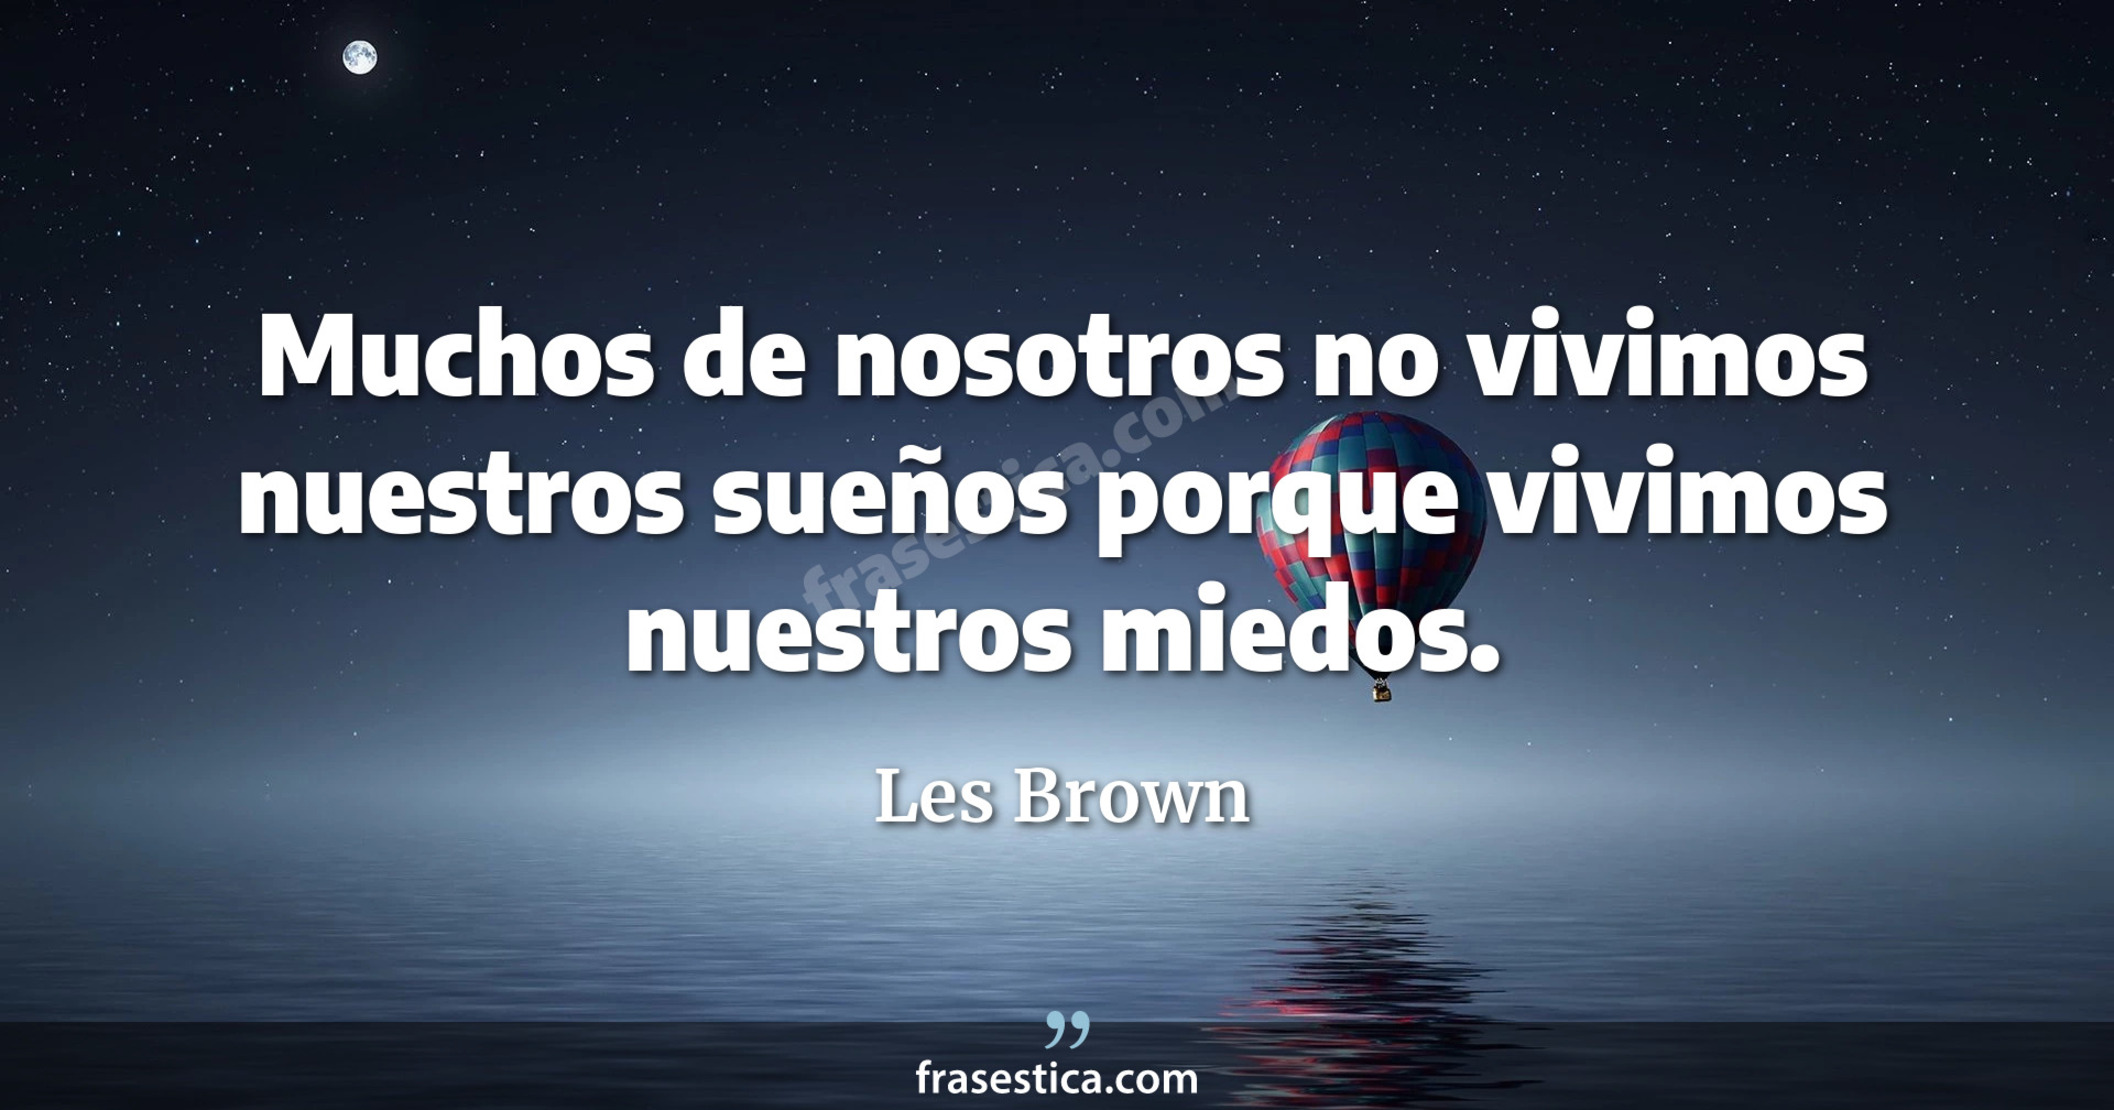 Muchos de nosotros no vivimos nuestros sueños porque vivimos nuestros miedos. - Les Brown